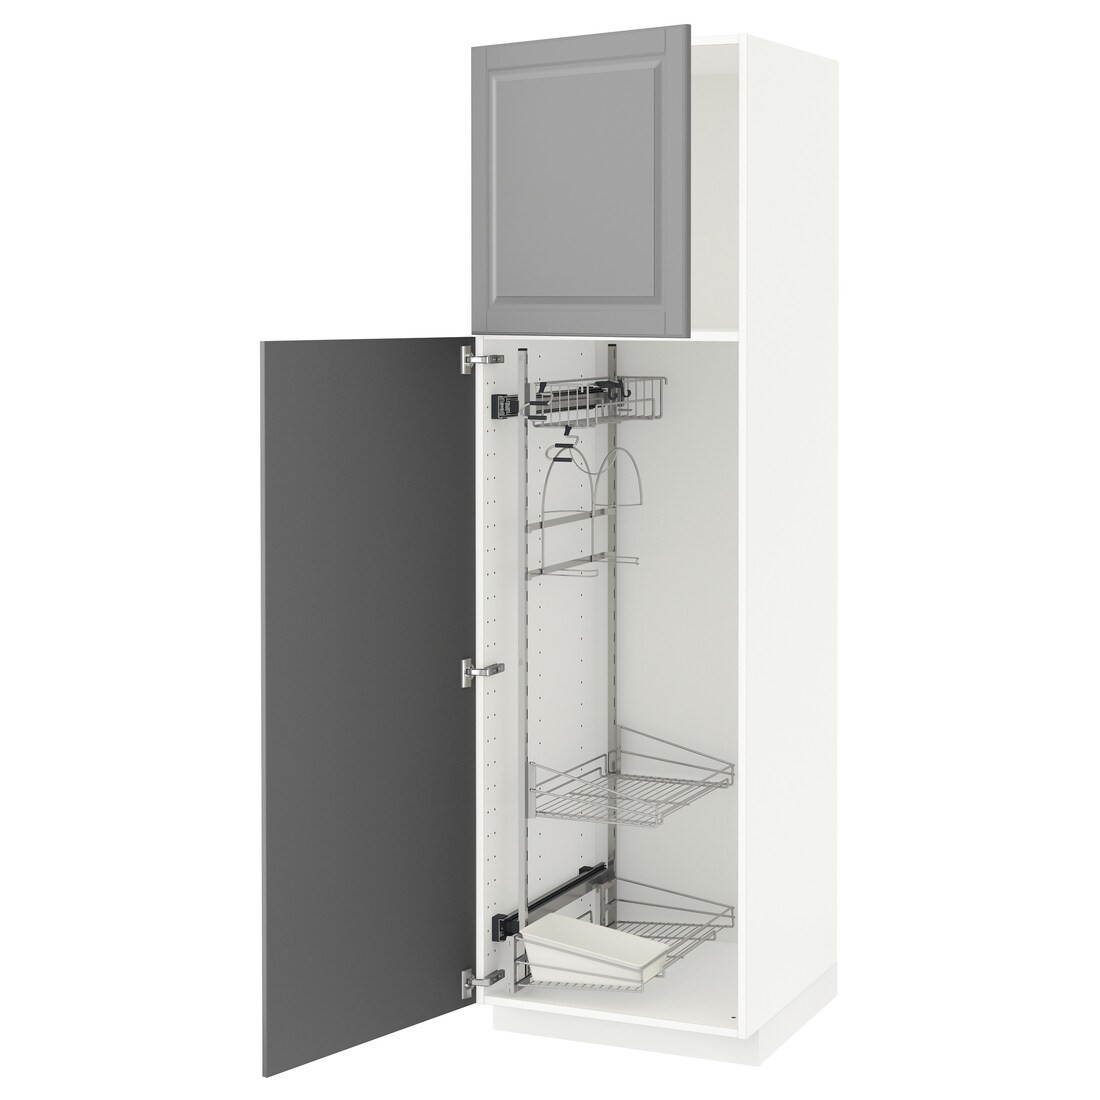 METOD МЕТОД Висока шафа з відділенням для аксесуарів для прибирання, білий / Bodbyn сірий, 60x60x200 см